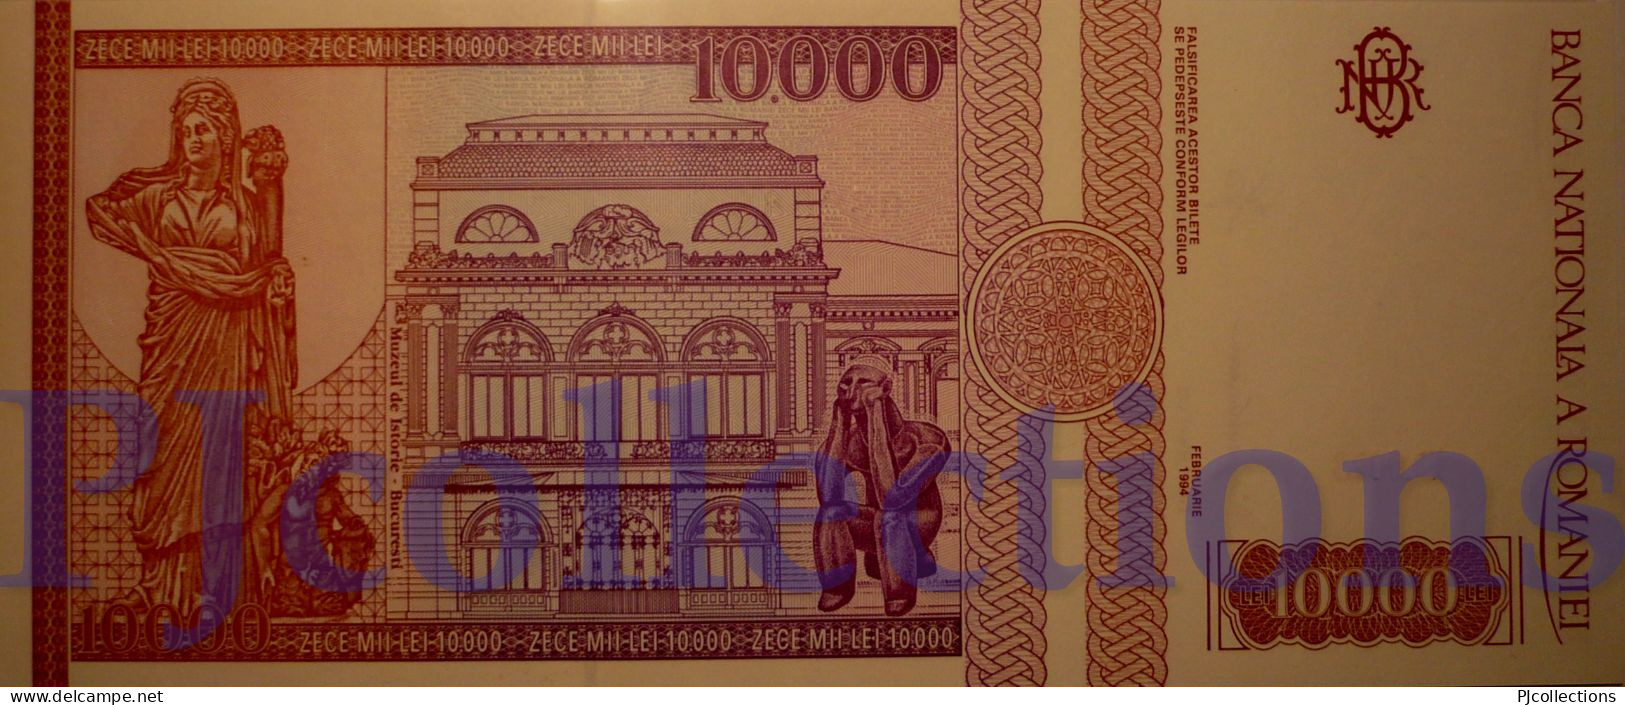 ROMANIA 10000 LEI 1994 PICK 105 UNC - Romania